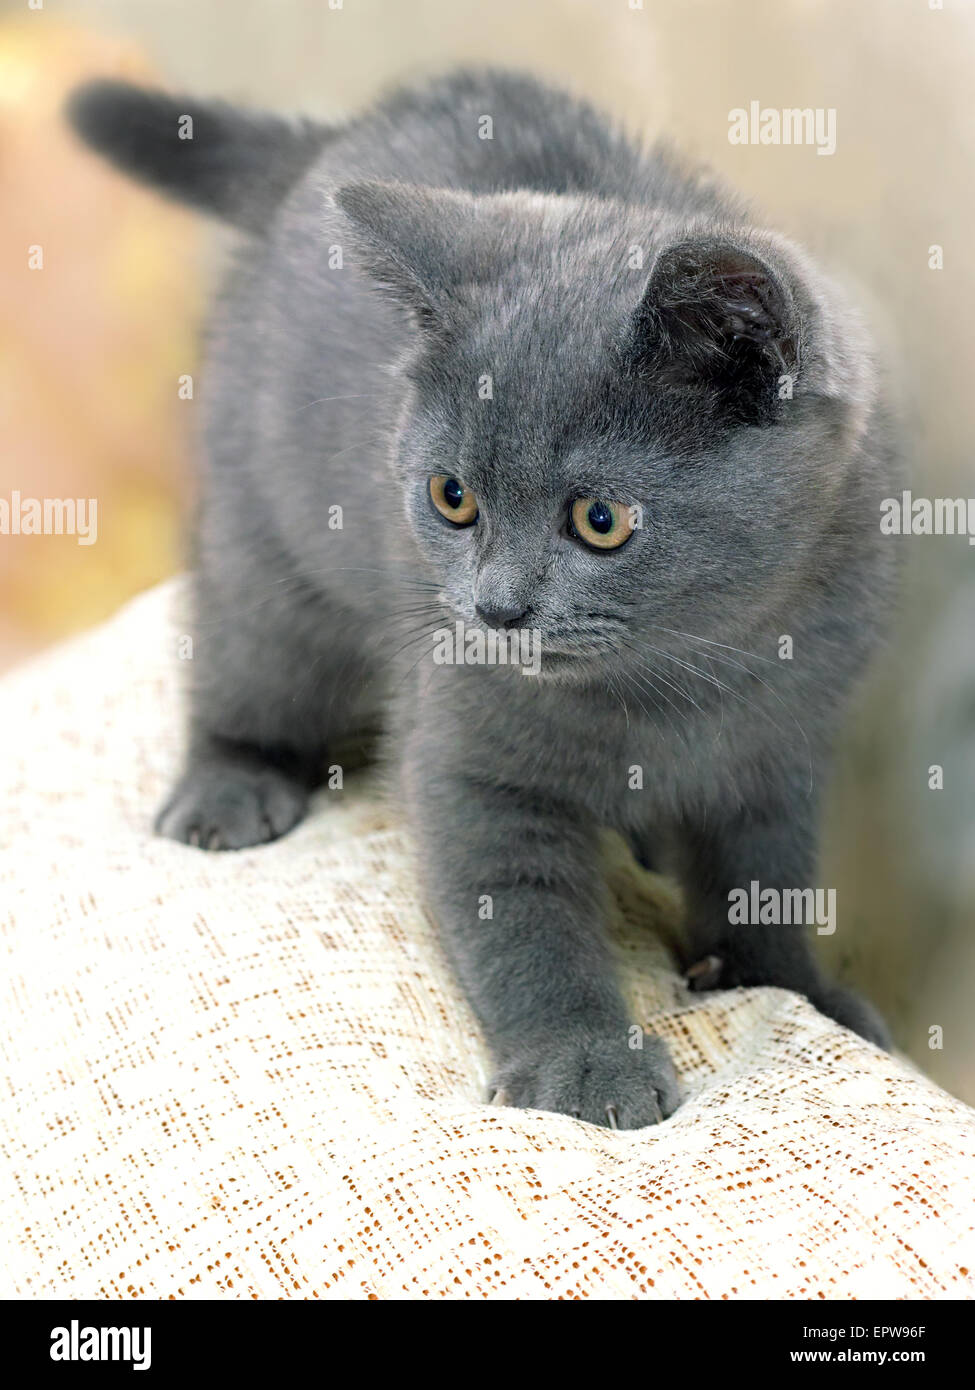 Britische Rasse Kätzchen rauchig-graue Farbe während des Spielens Stockfoto